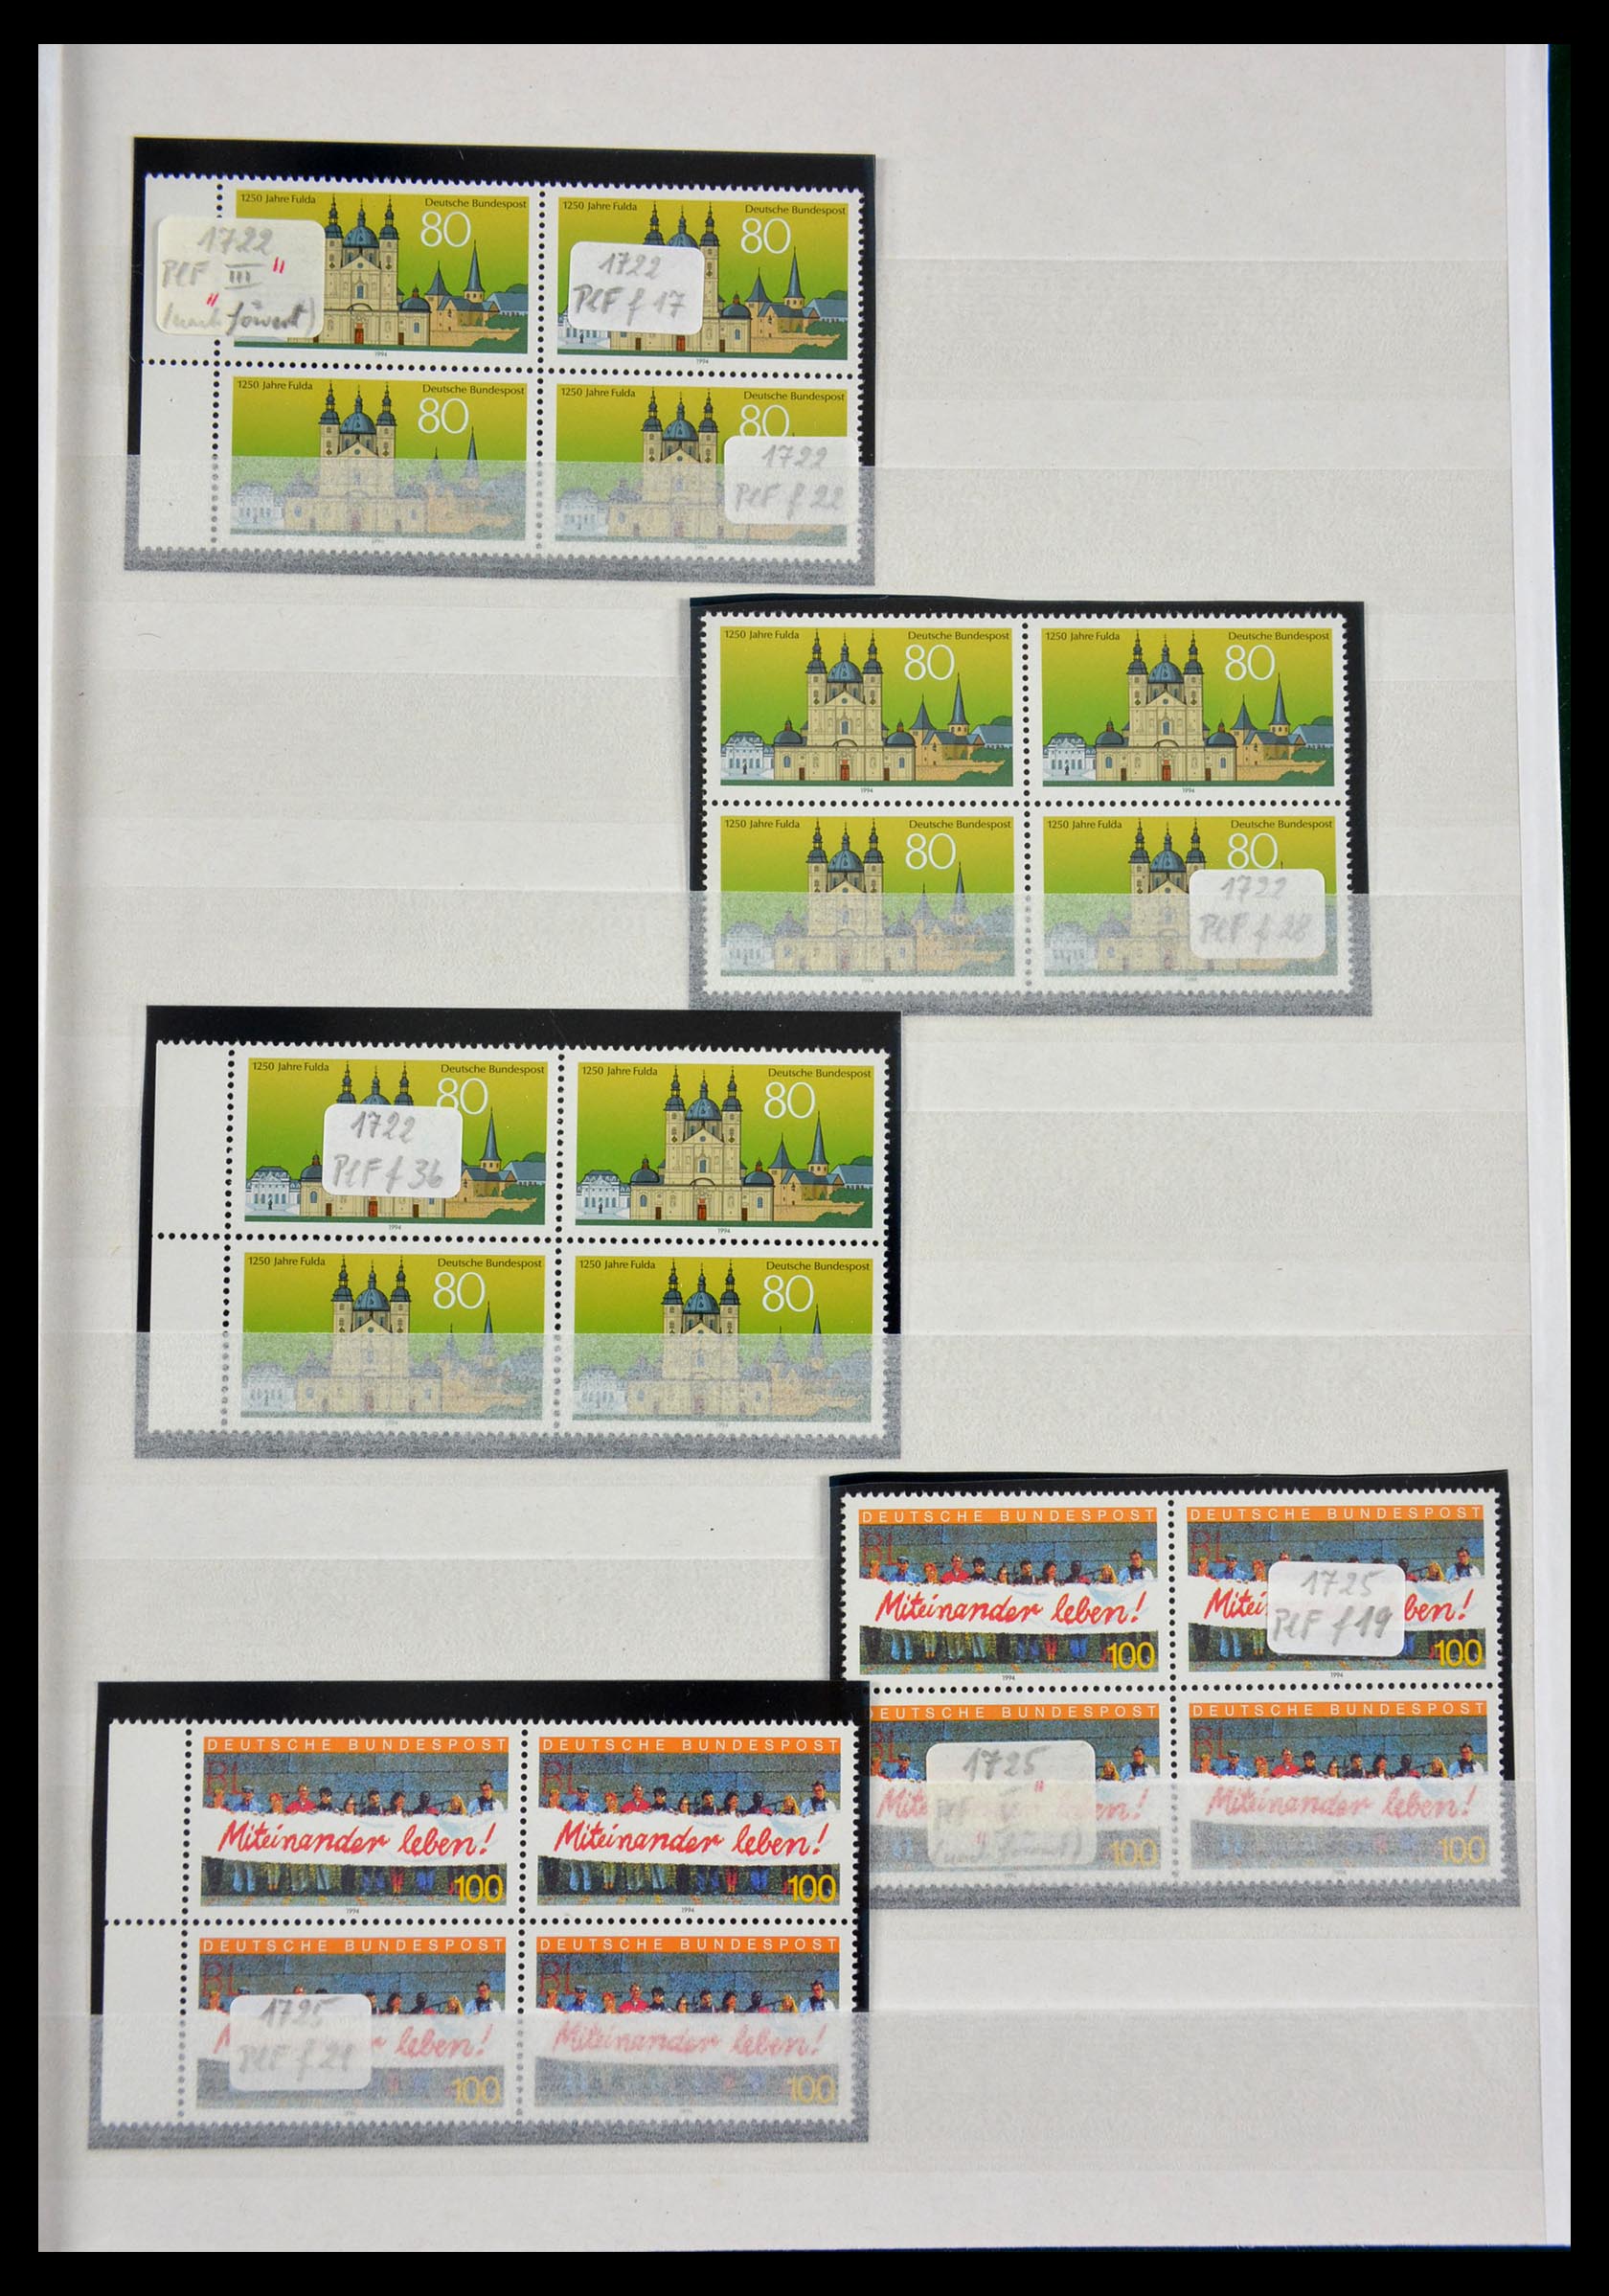 29491 057 - 29491 Bundespost plateflaws 1957-1994.